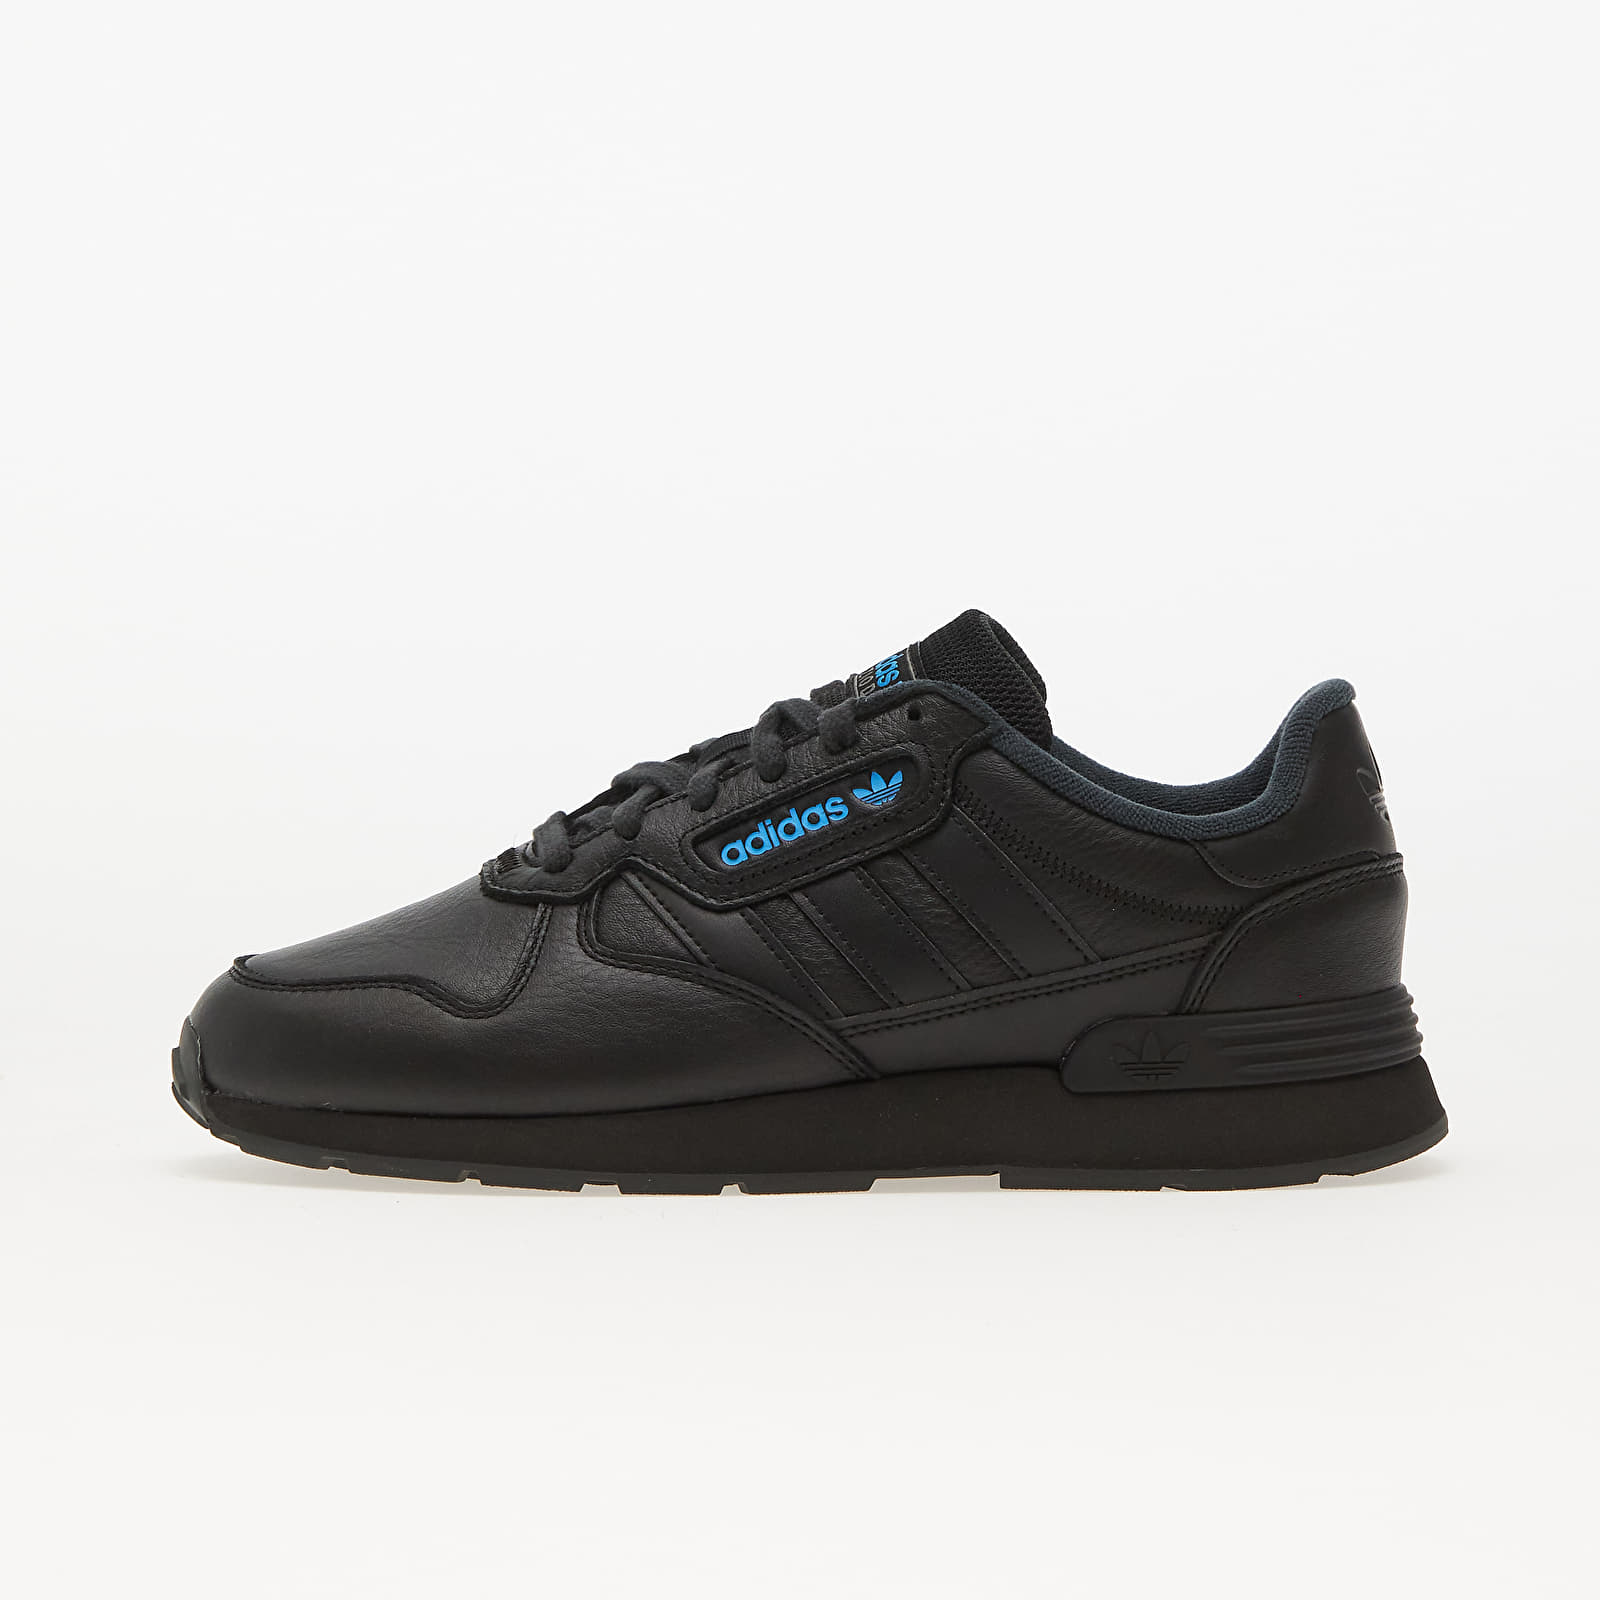 Men's shoes adidas Treziod 2 Core Black/ Carbon/ Grey Four